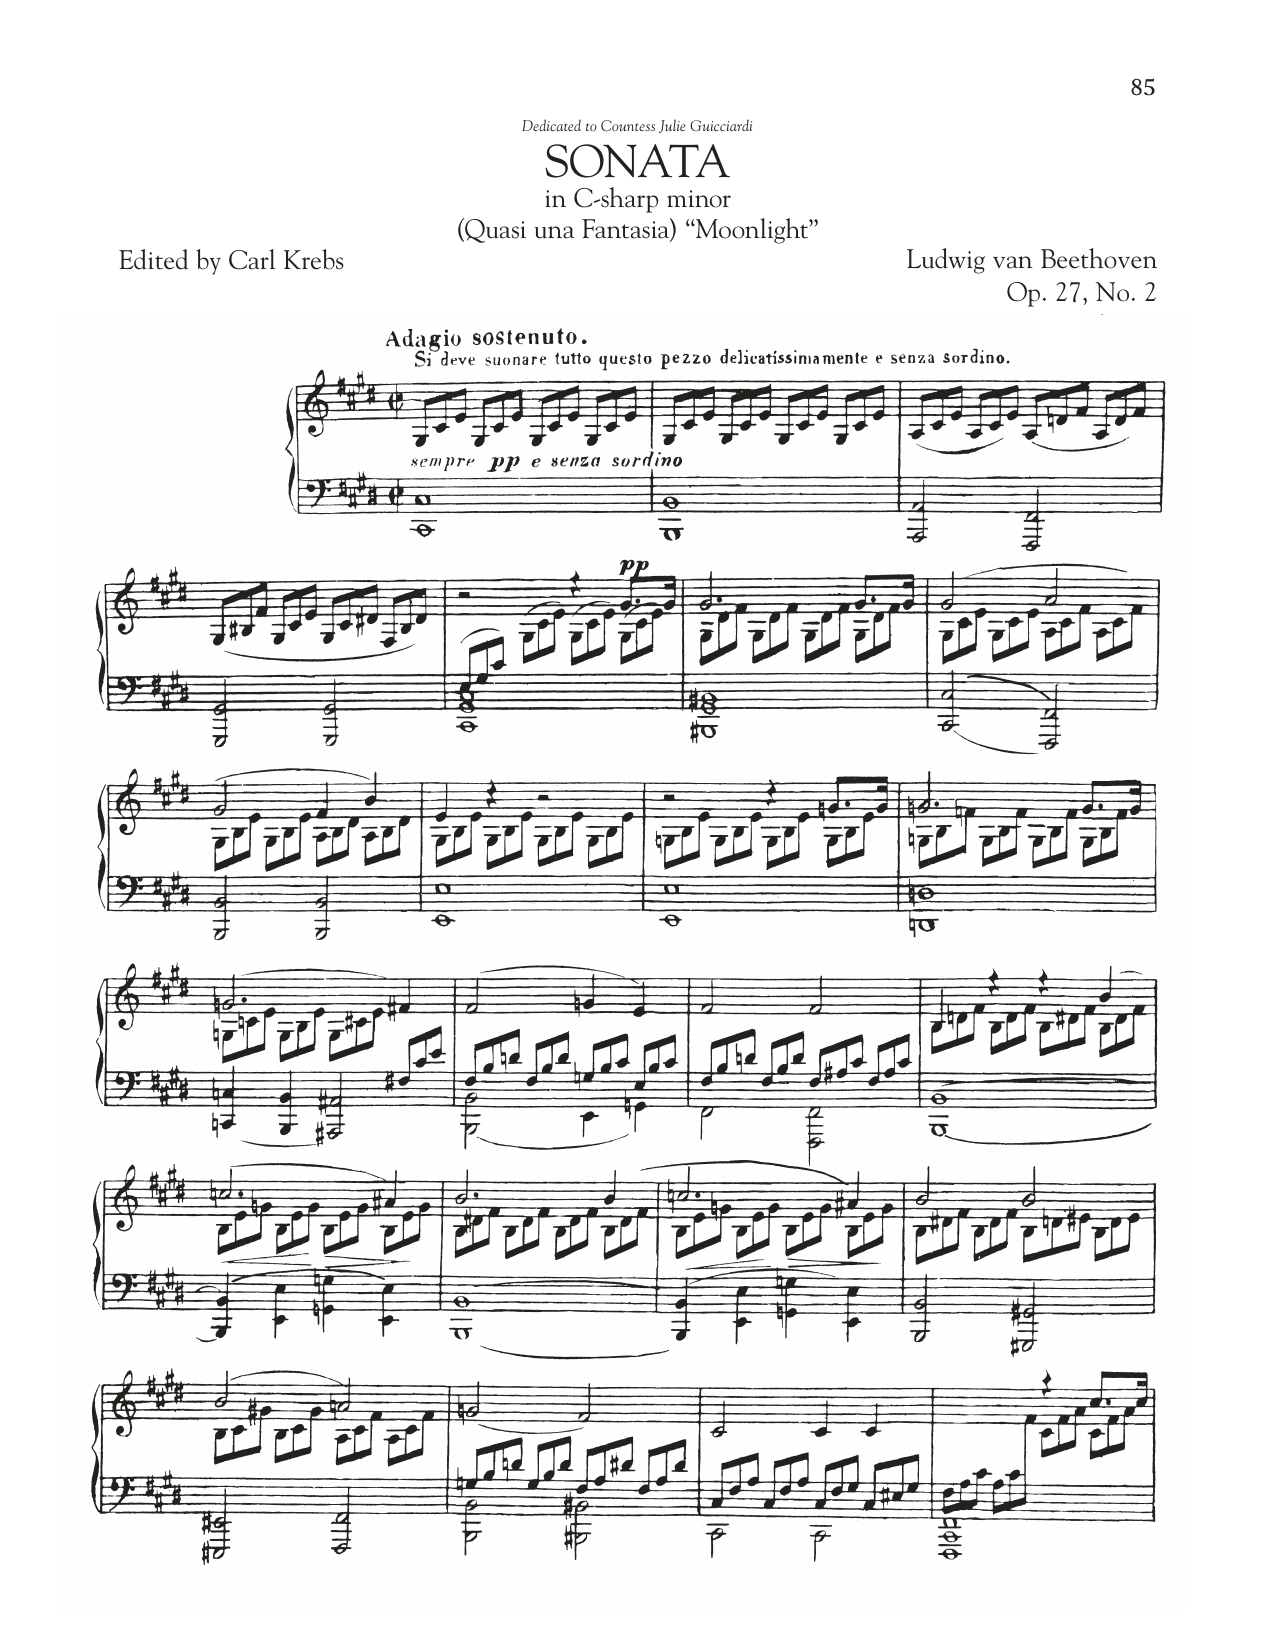 Piano Sonata No. 14, Op. 27, No. 2 (